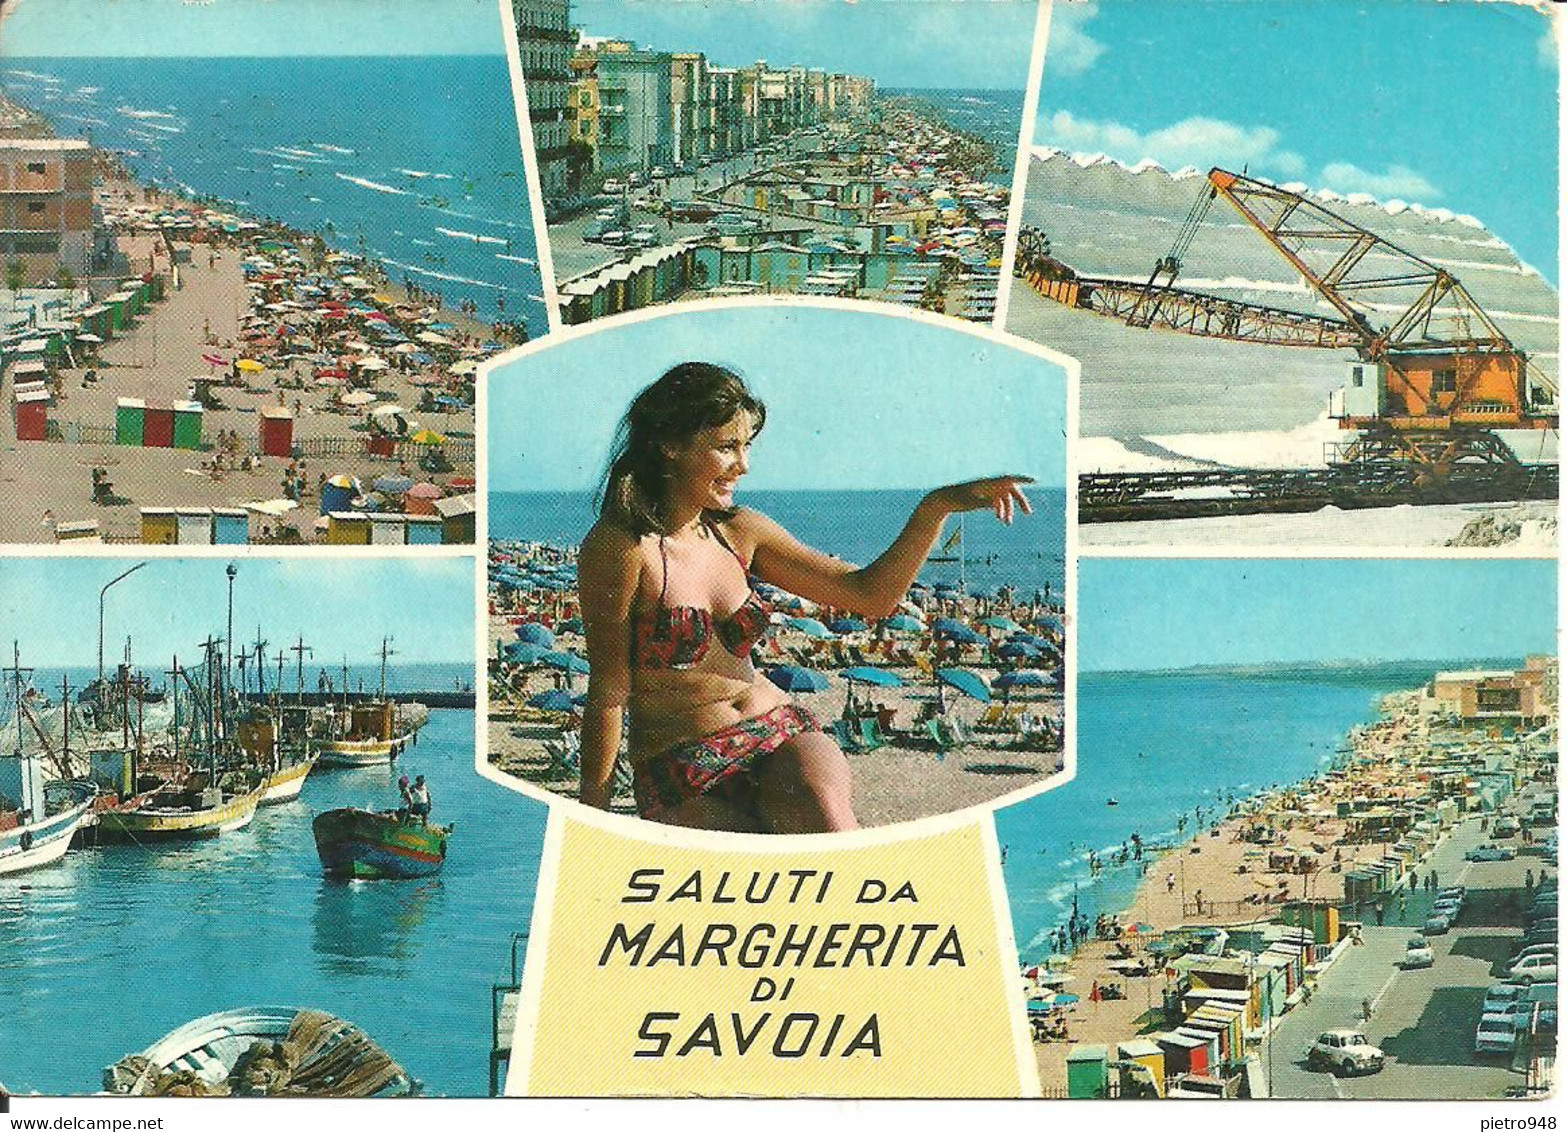 Margherita Di Savoia (Barletta) Vedute: Spiaggia, Lungomare, Porto, Saline E Ragazza In Spiaggi In Bikini (Sexi, Pin Up) - Barletta